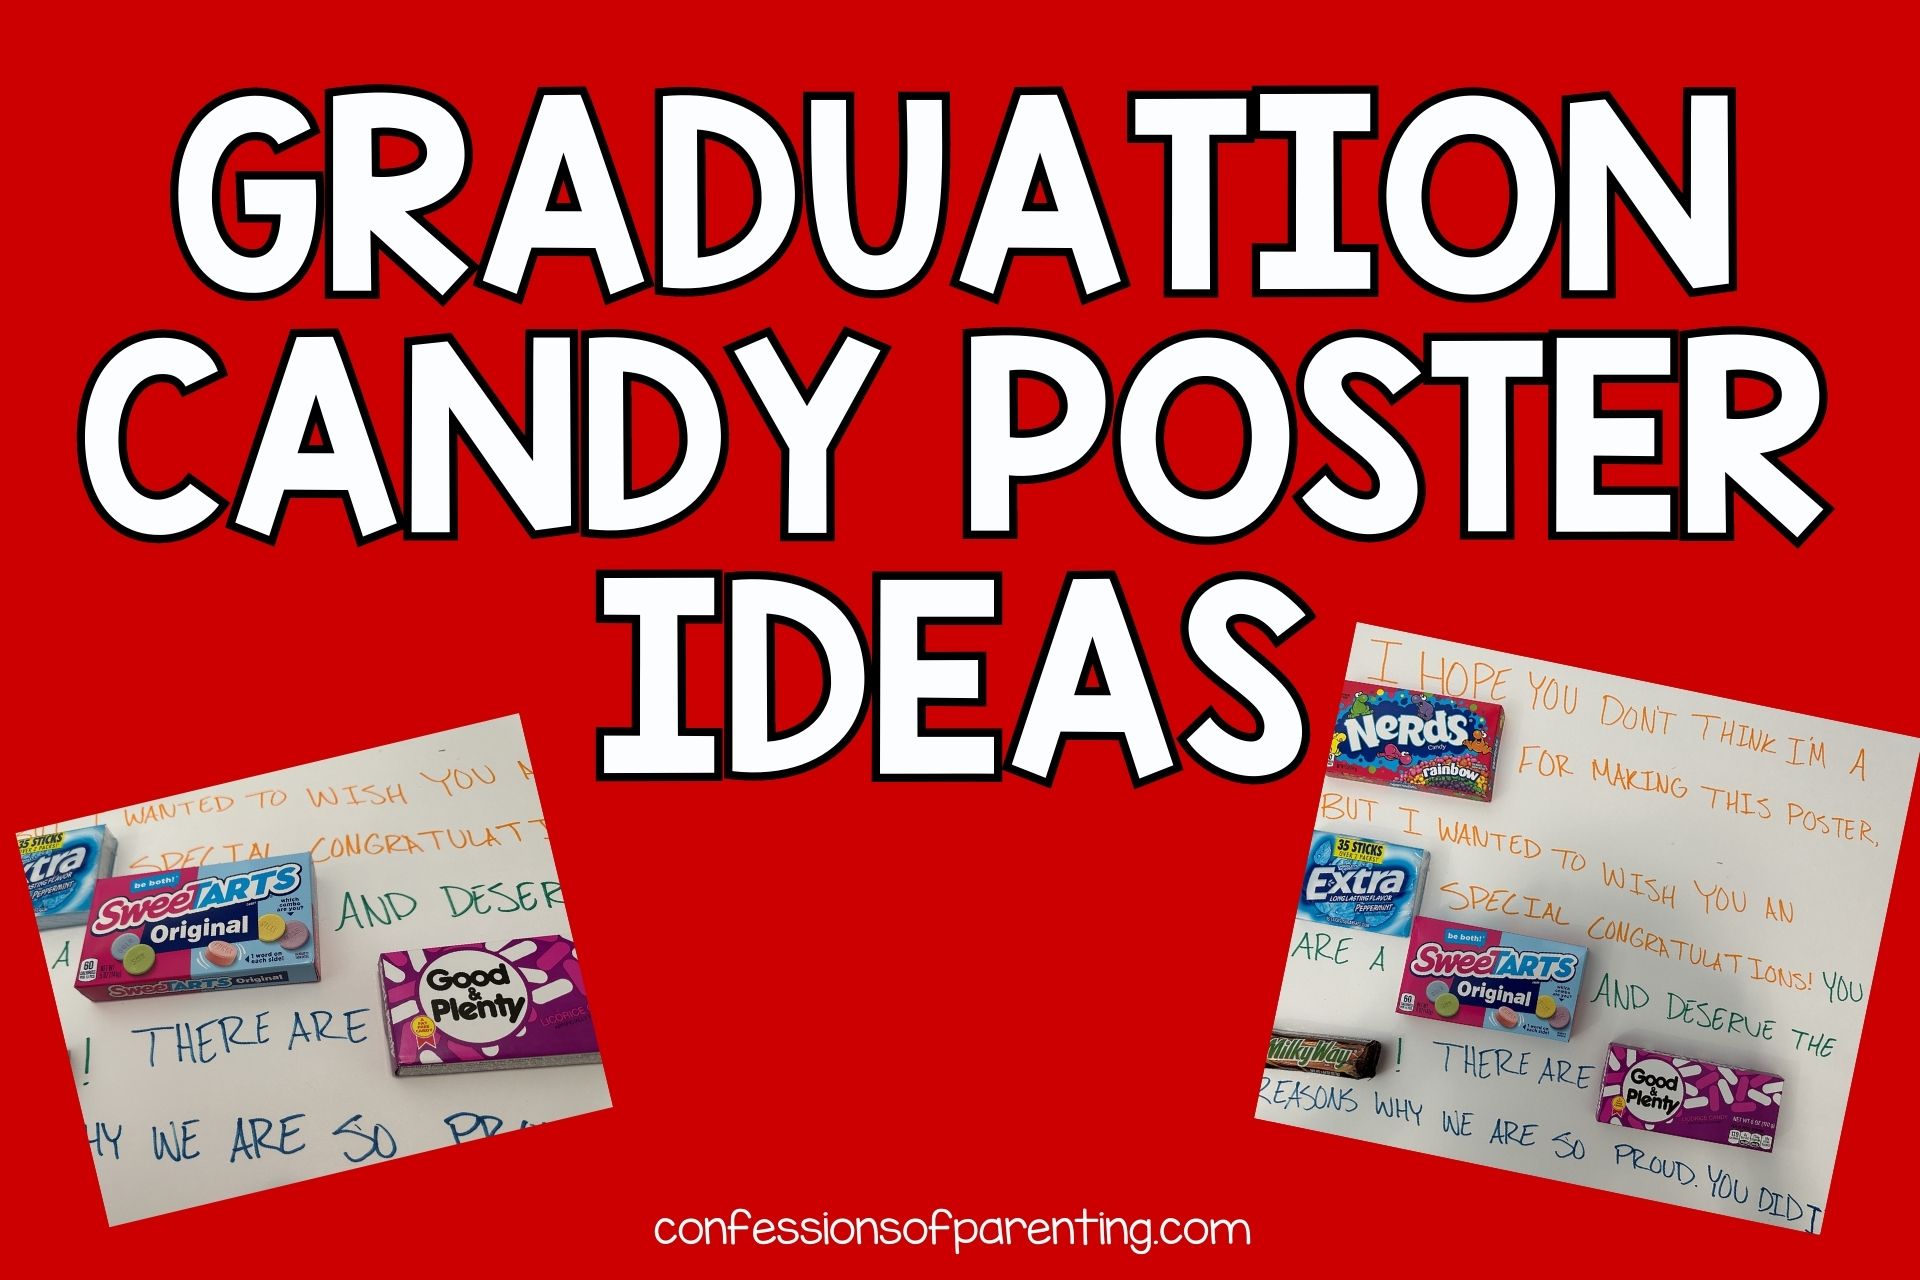 graduation candy poster ideas.jpg